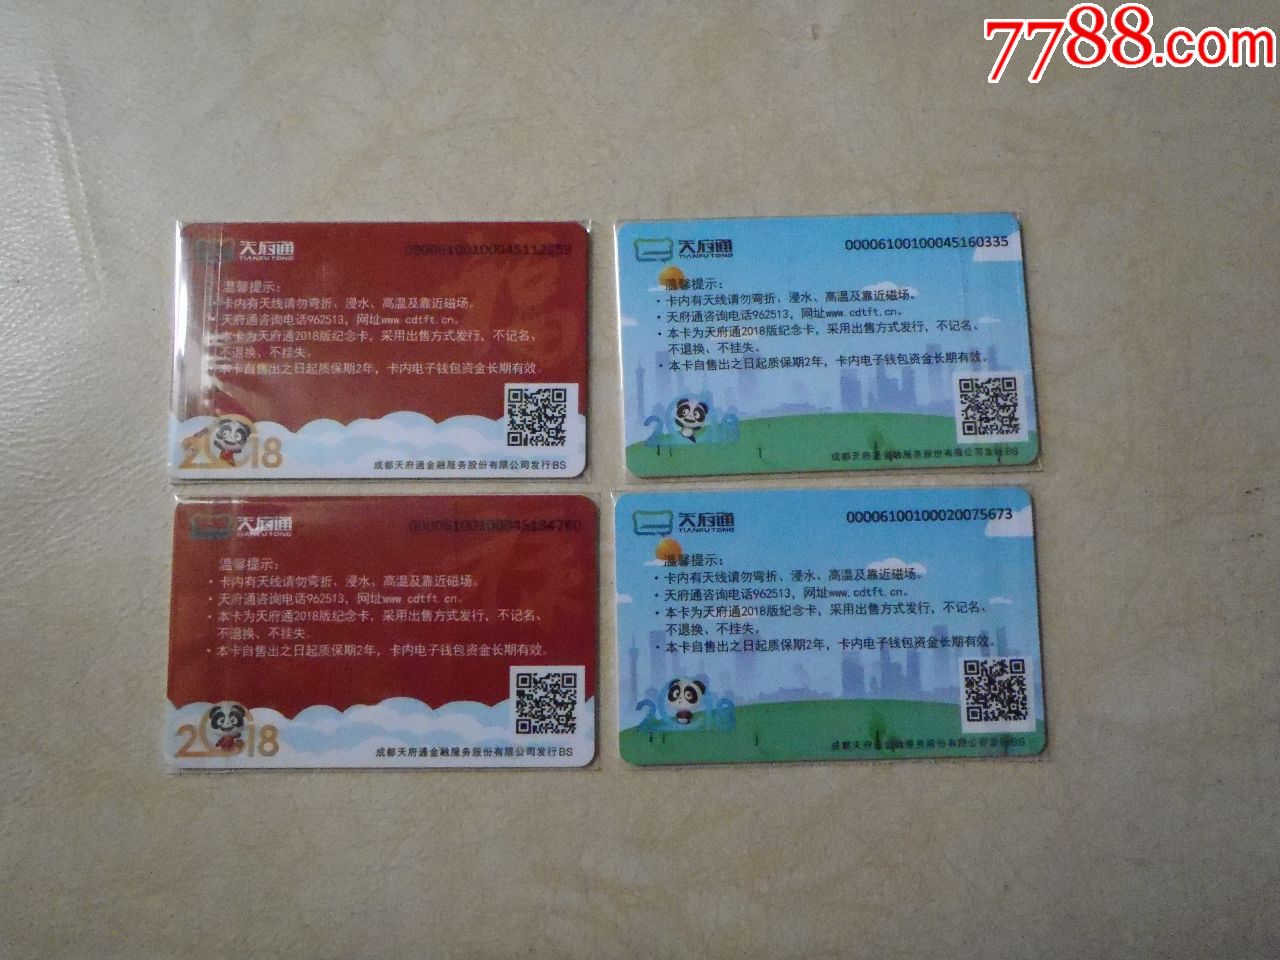 成都天府通公交卡:熊猫套卡(4张)